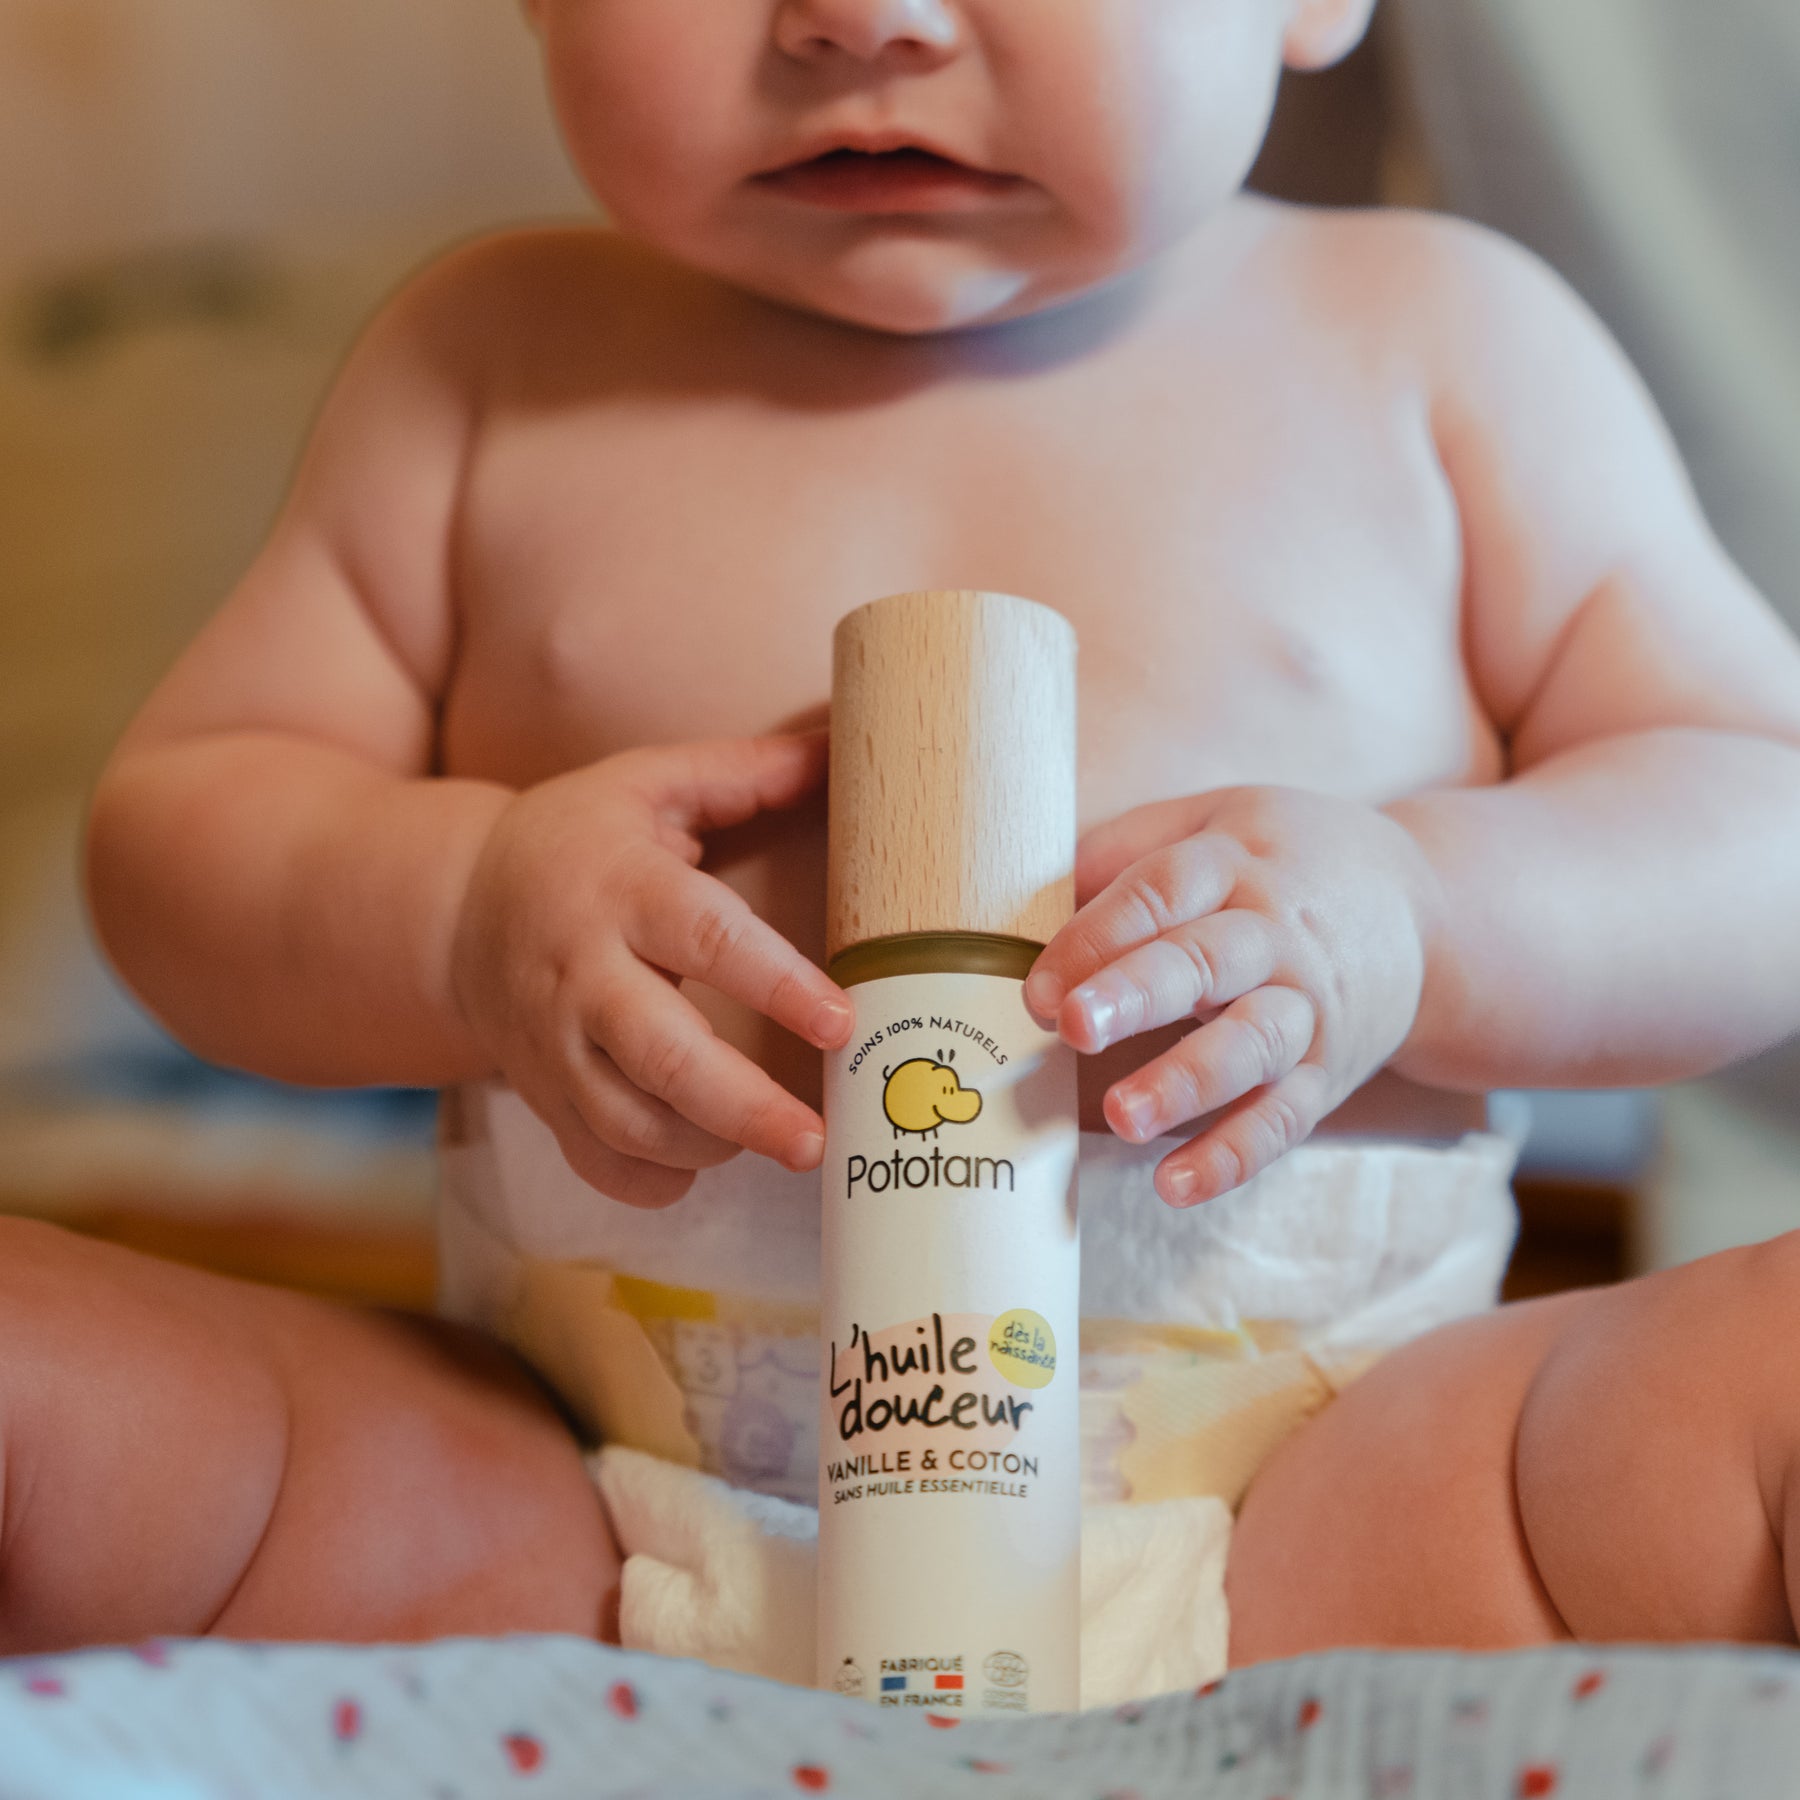 Produits hygiène Bébé - Hygiène et cosmétiques pour le soin de bébé